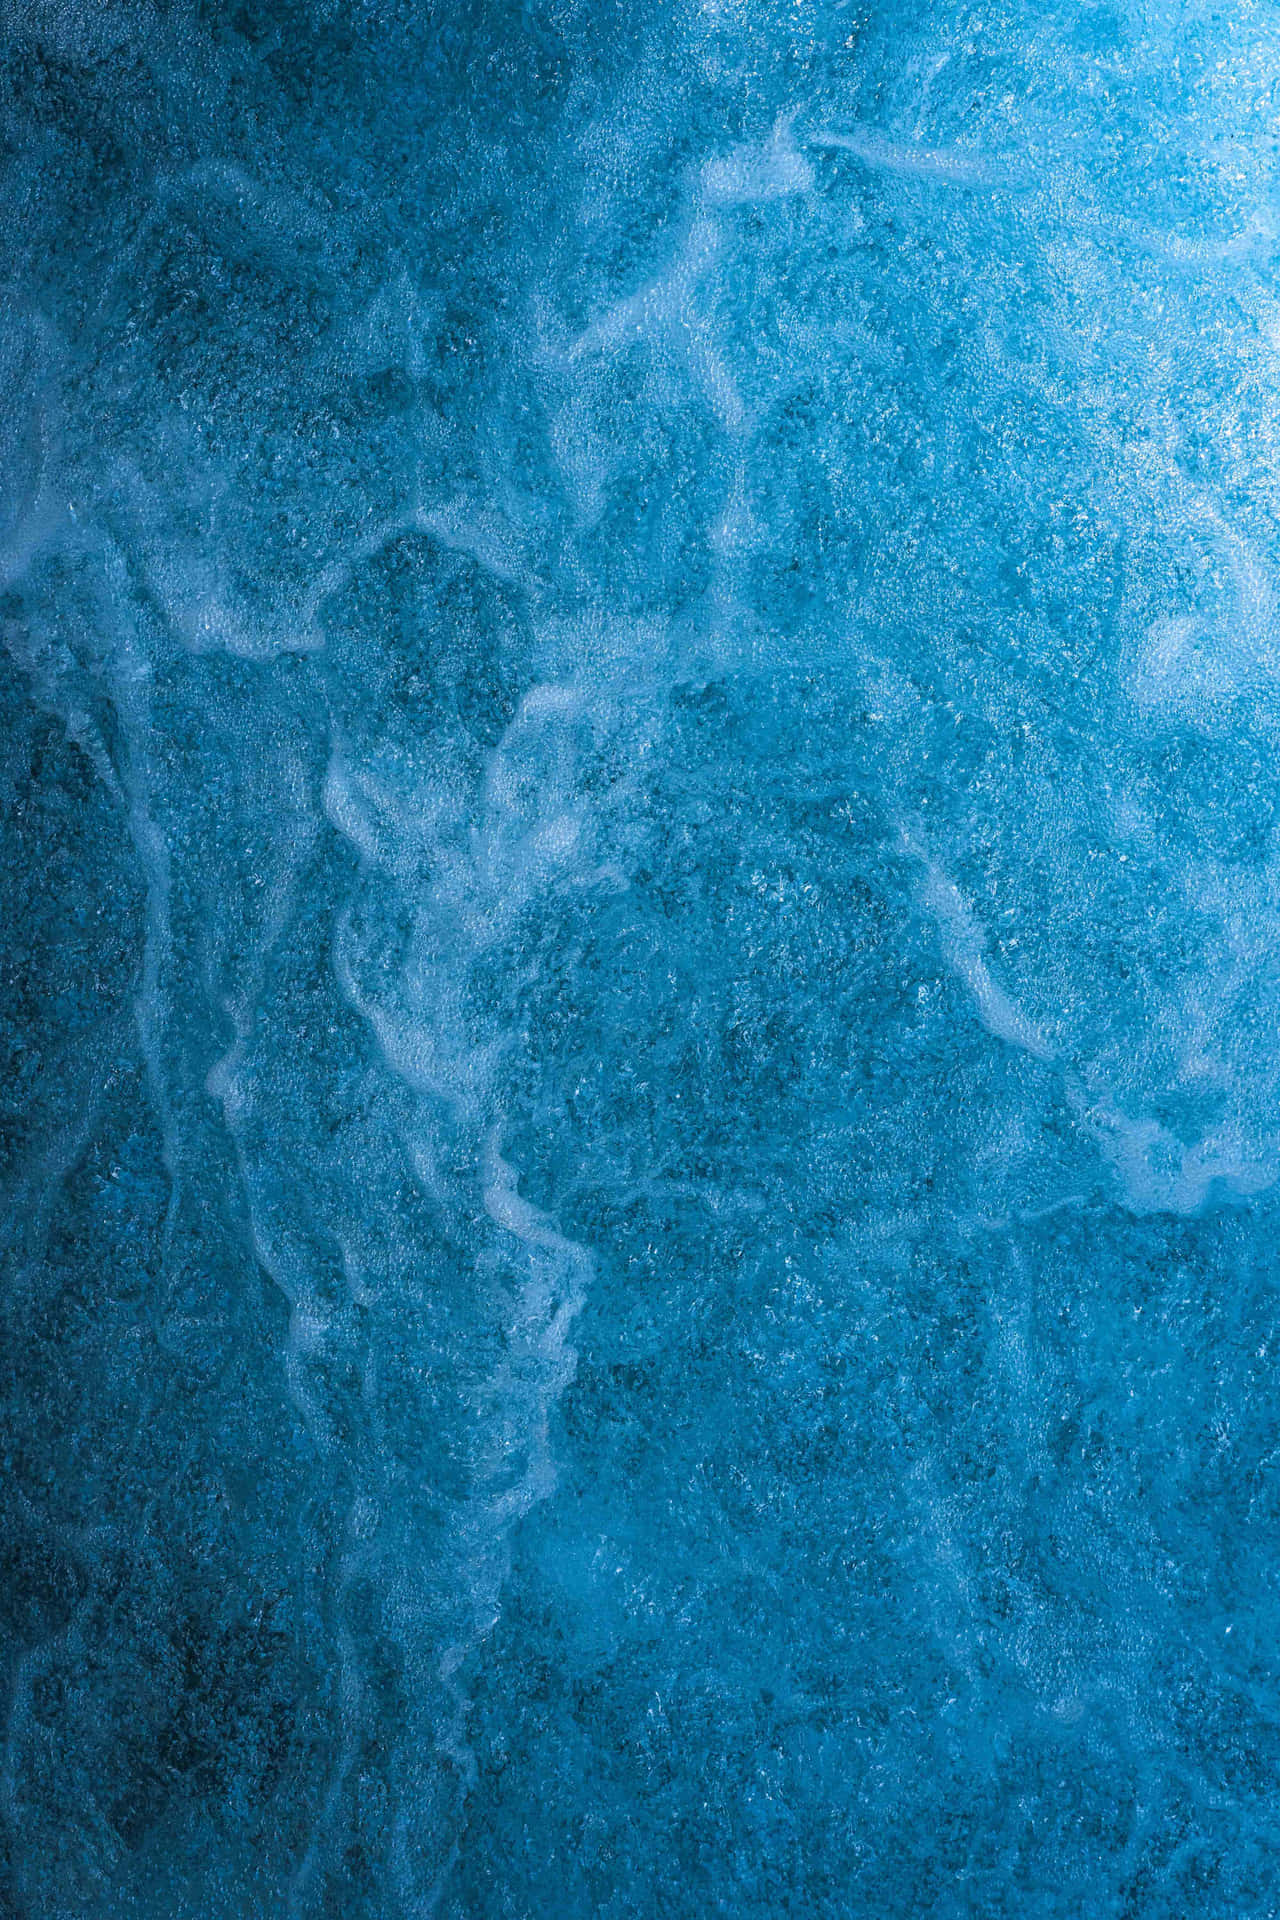 Fundode Textura De Água Azul E Aqua Para Picsart